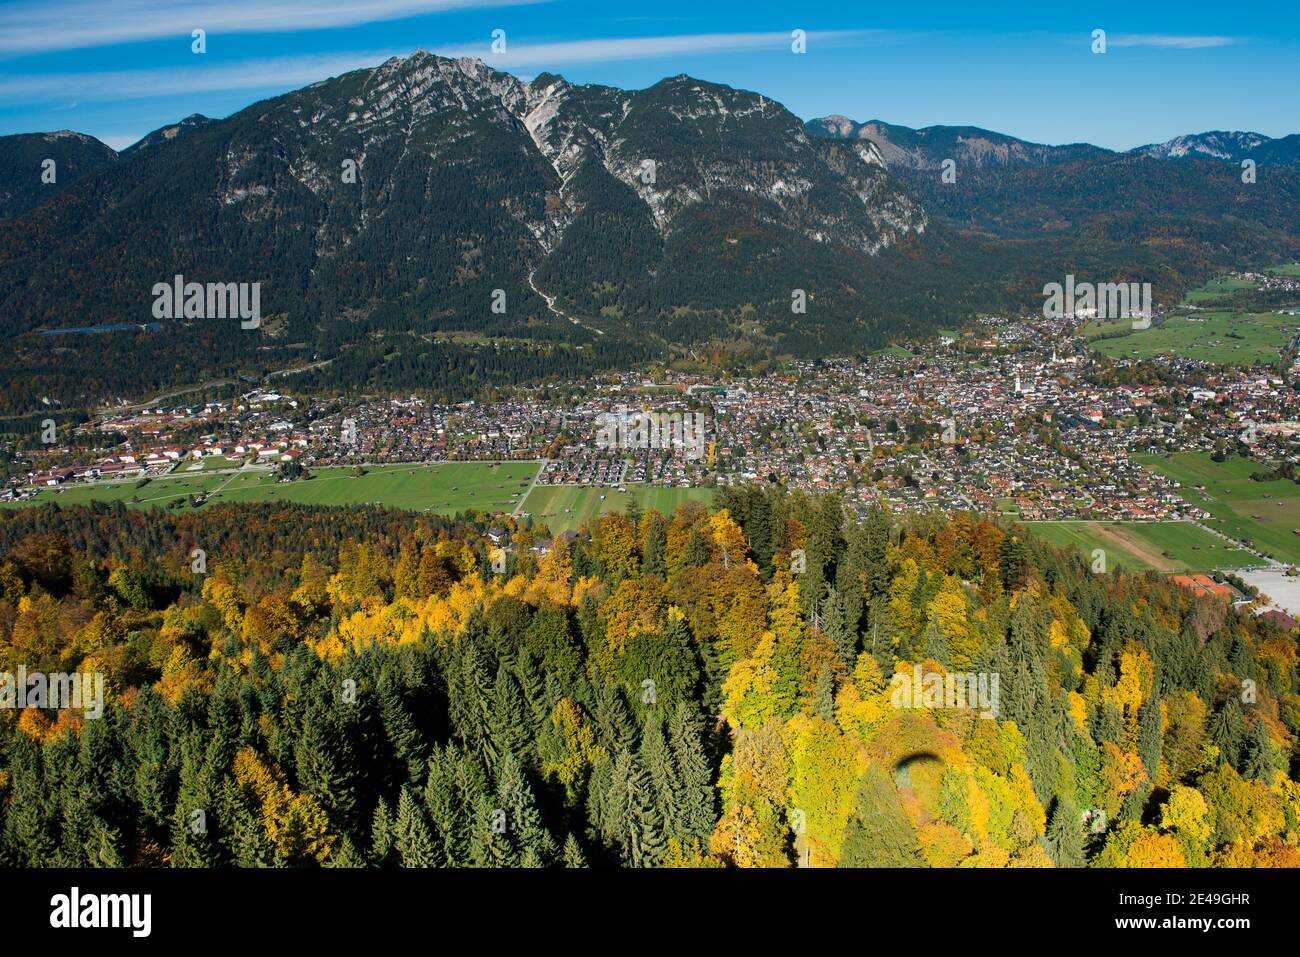 Garmisch, Kramer, Risserkopf, autumn, Garmisch-Partenkirchen, aerial view, Werdenfelser Land, Oberland, Bavaria, Germany Stock Photo